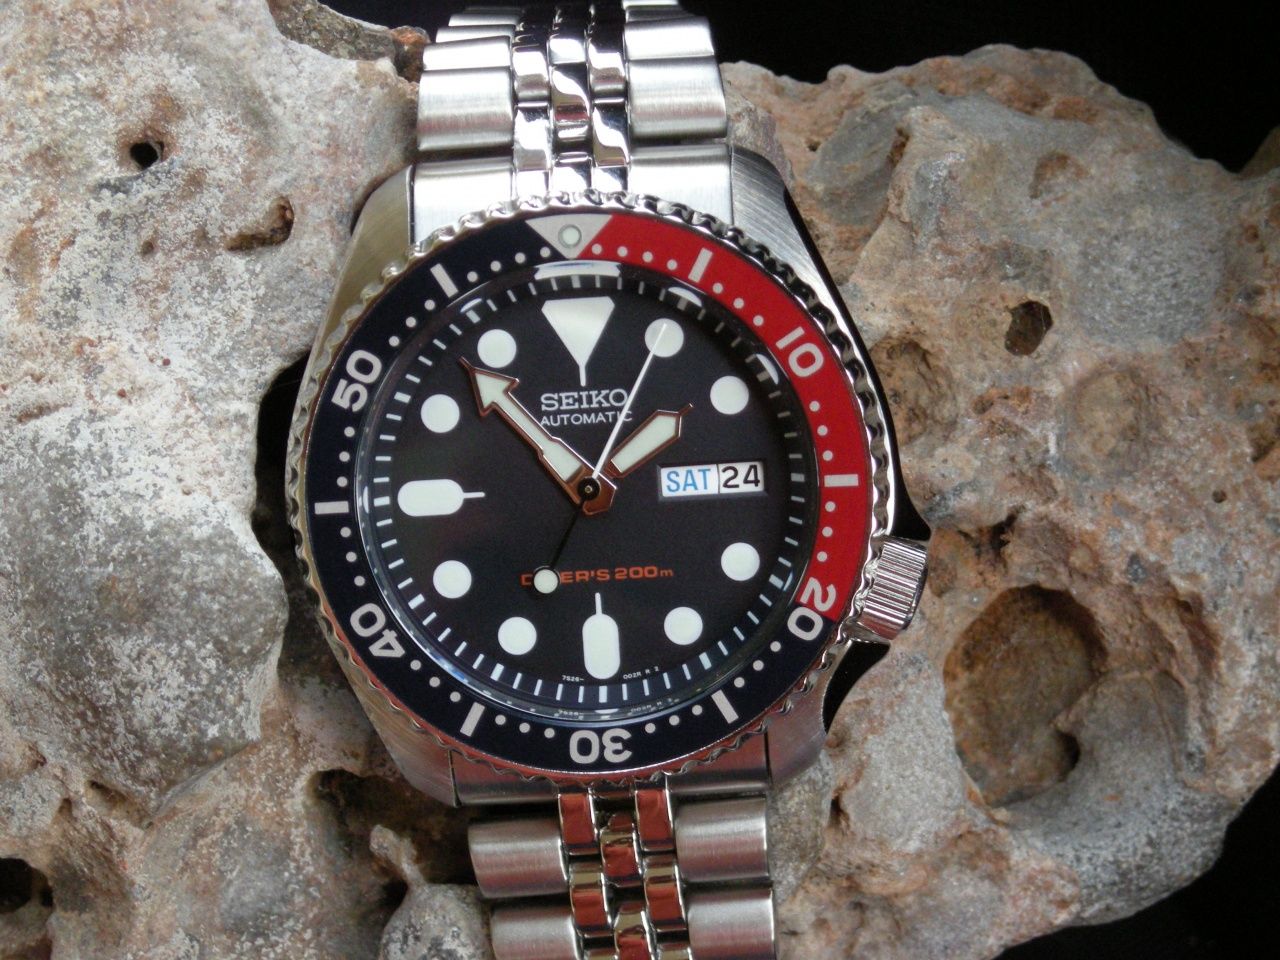 Khả năng chống nước lên tới 200m, SKX009K2 xứng đáng là chiếc đồng hồ best diver của Seiko